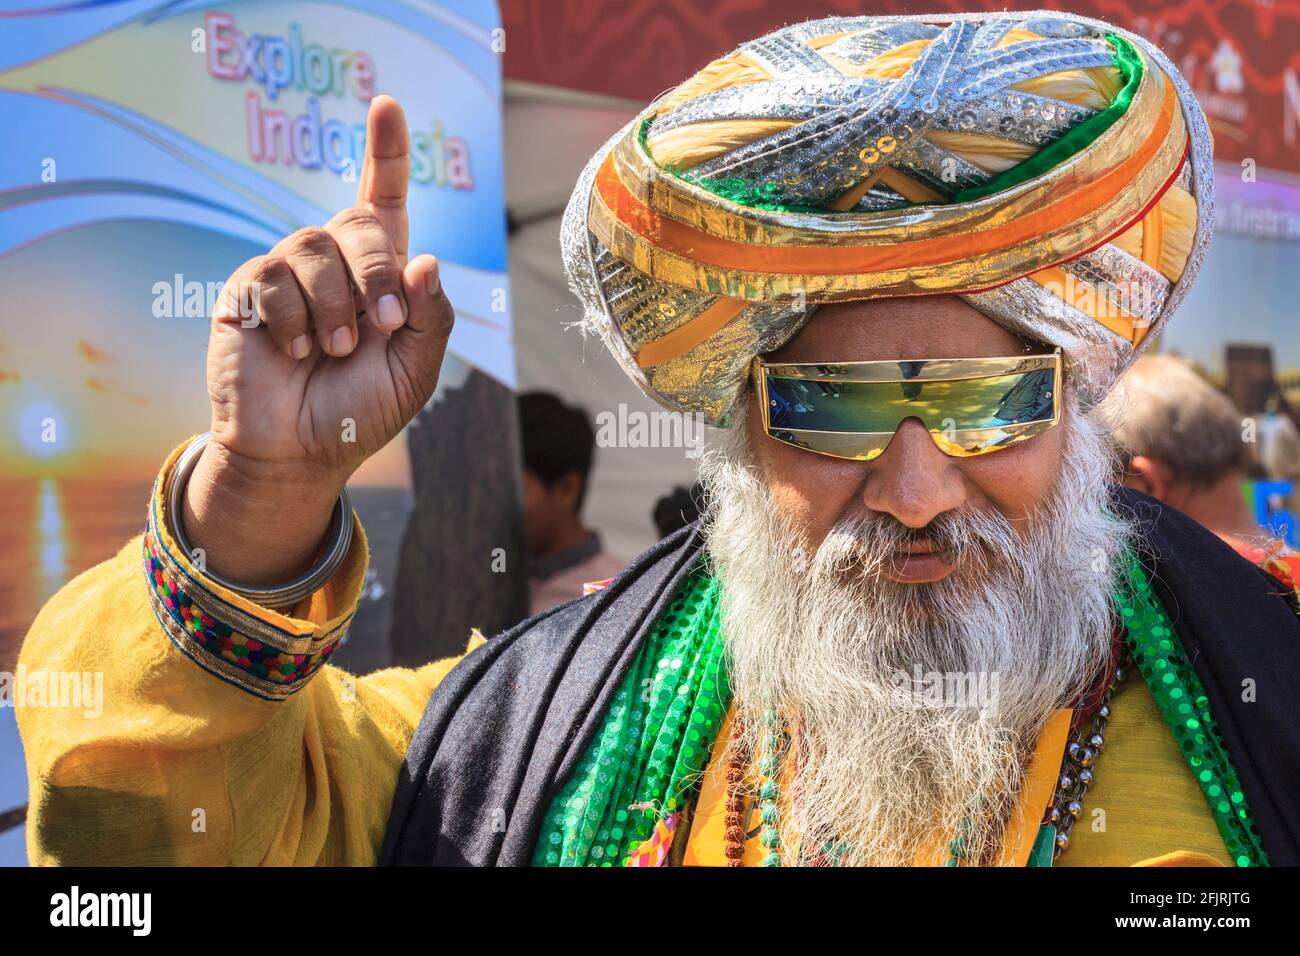 Le Sikh Punjabi Kala Kala dans le turban Dastar coloré et la tenue traditionnelle vibrante, souriant, pose à un festival asiatique sur Trafalgar Square, Londres Banque D'Images